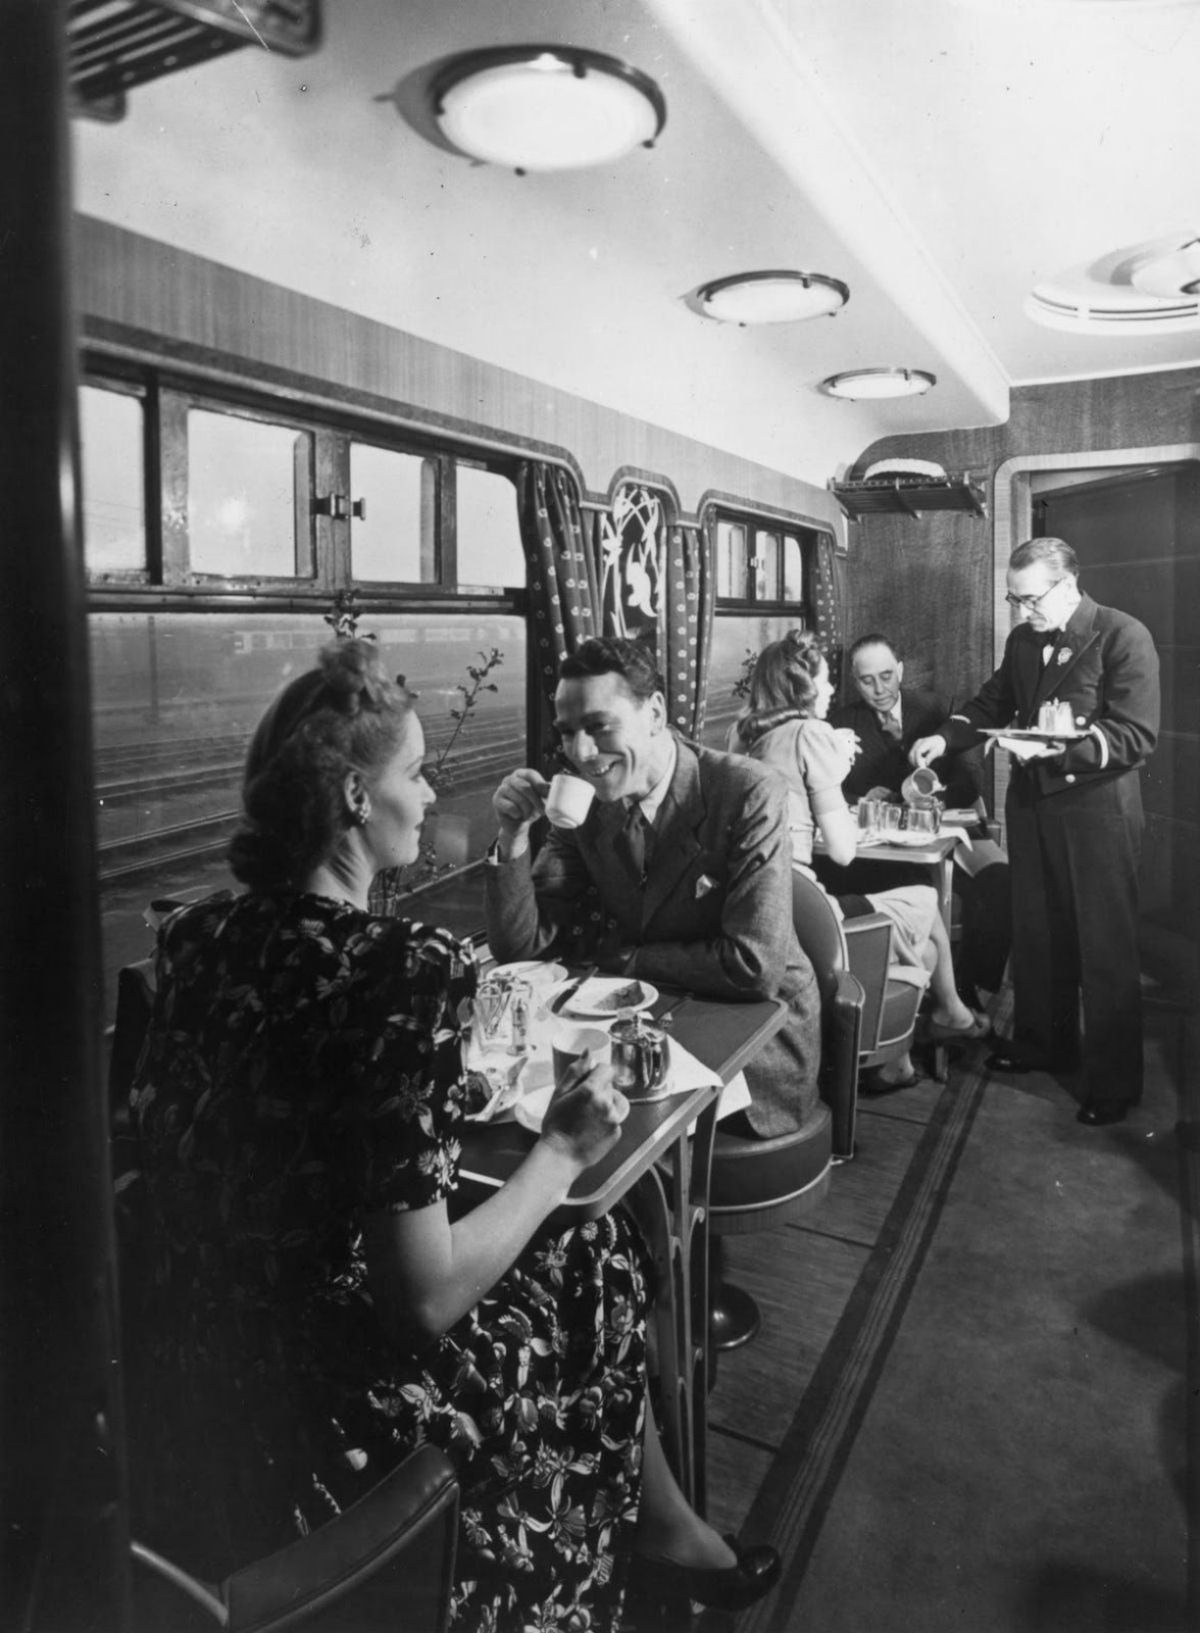 Fotos antigas mostram como eram glamorosas as viagens de trem entre 1900-1940 28